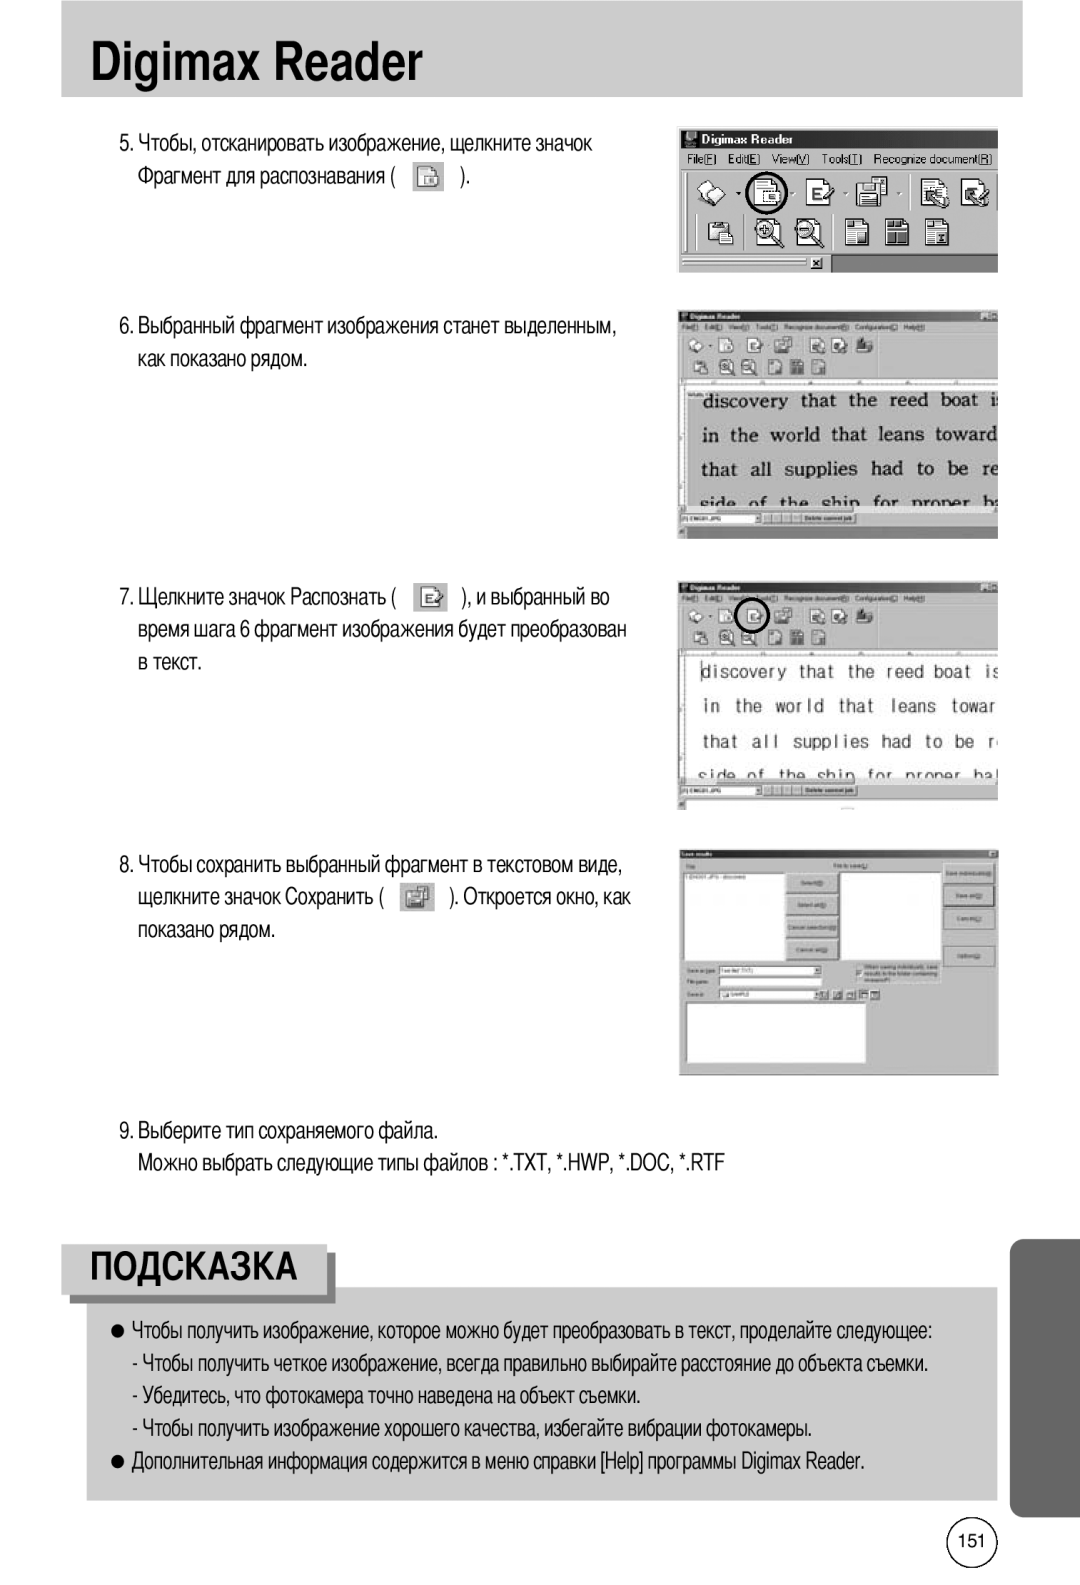 Samsung EC-I50ZZRBA/E1 7. время шага 6 фрагмент изображения будет преобразован в текст, Digimax Reader, как показано рядом 